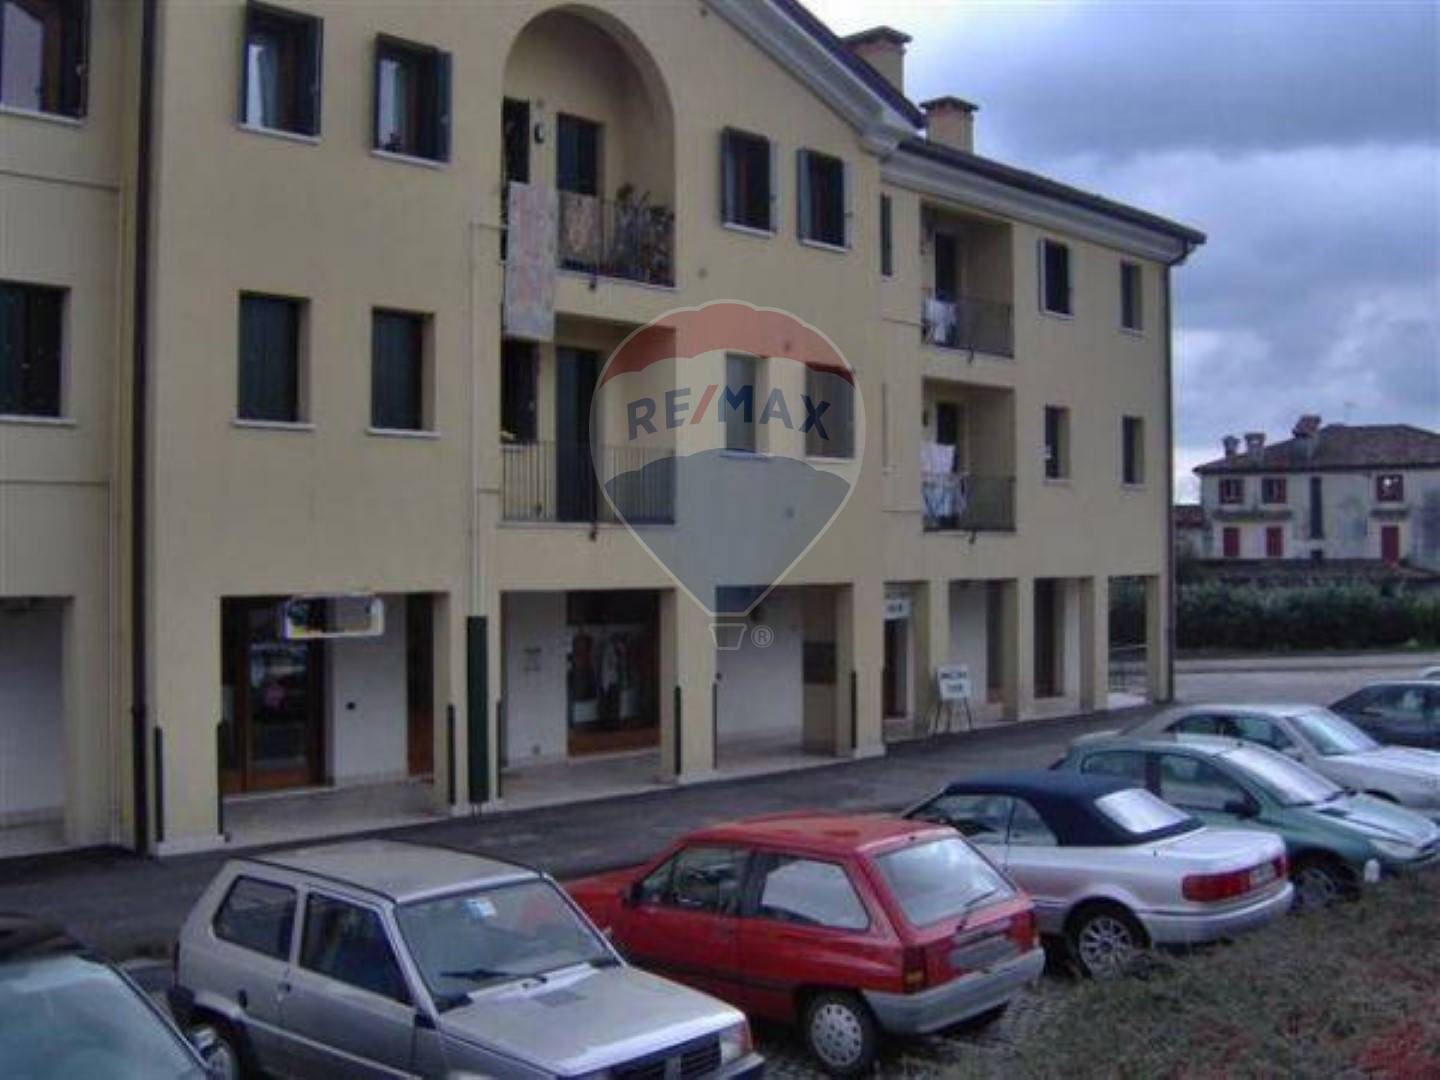 Negozio / Locale in vendita a Castelcucco, 9999 locali, prezzo € 49.000 | CambioCasa.it